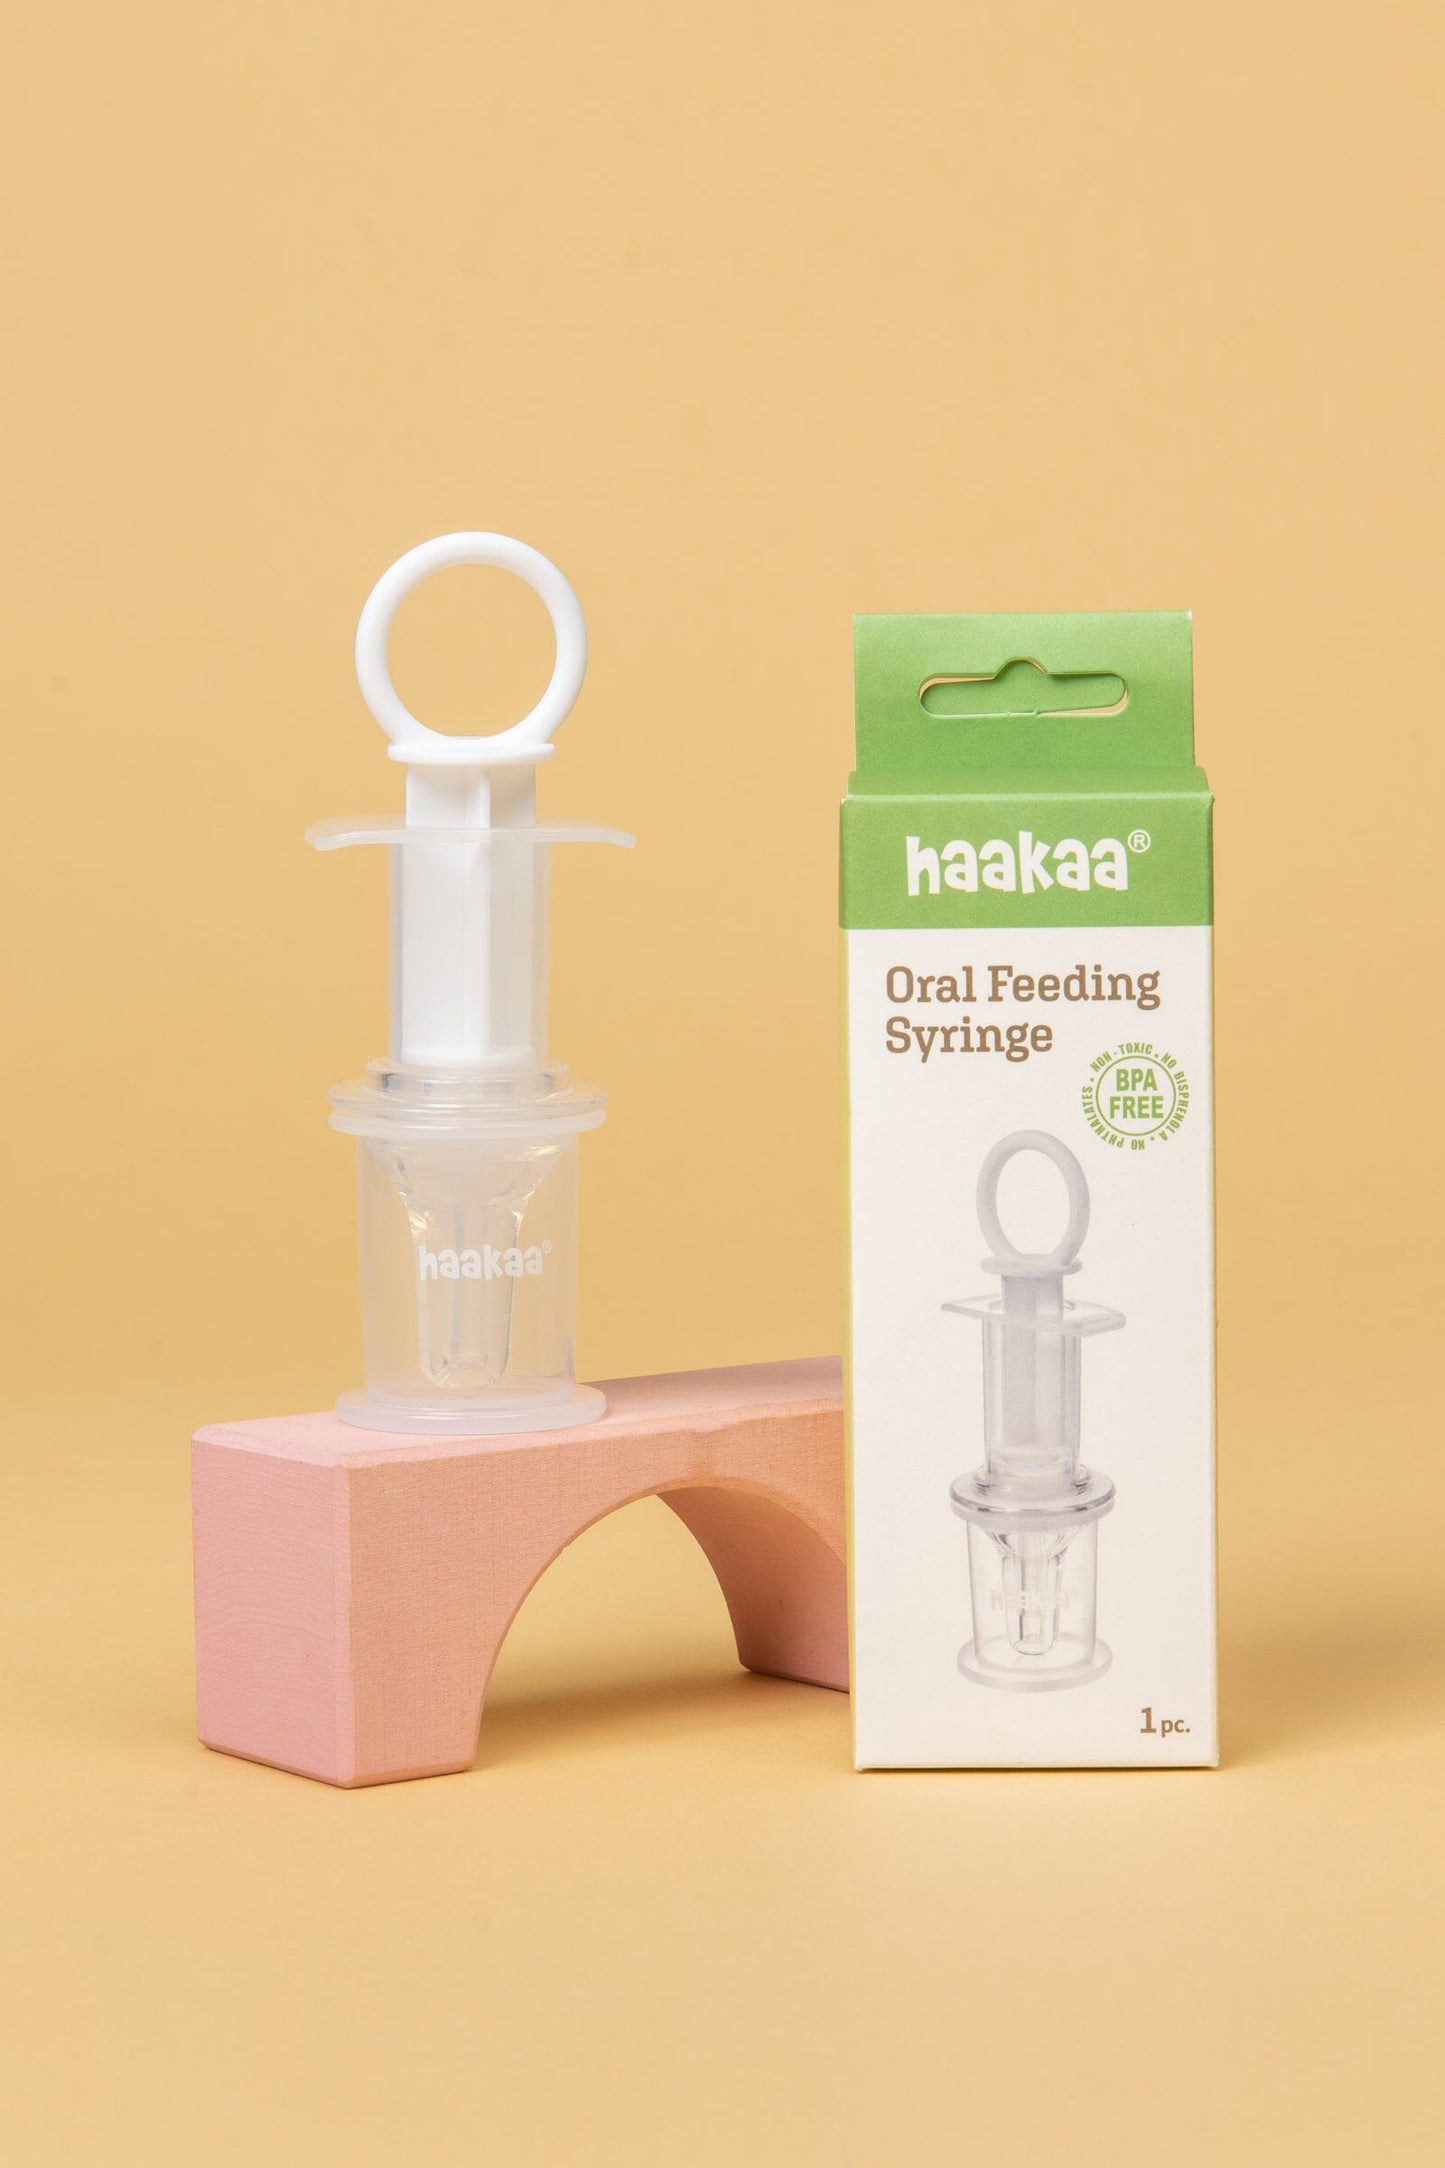 https://www.kiinbaby.com/cdn/shop/products/haakaa-oral-feeding-syringe-feeding-haakaa-264502.jpg?v=1675325206&width=1445